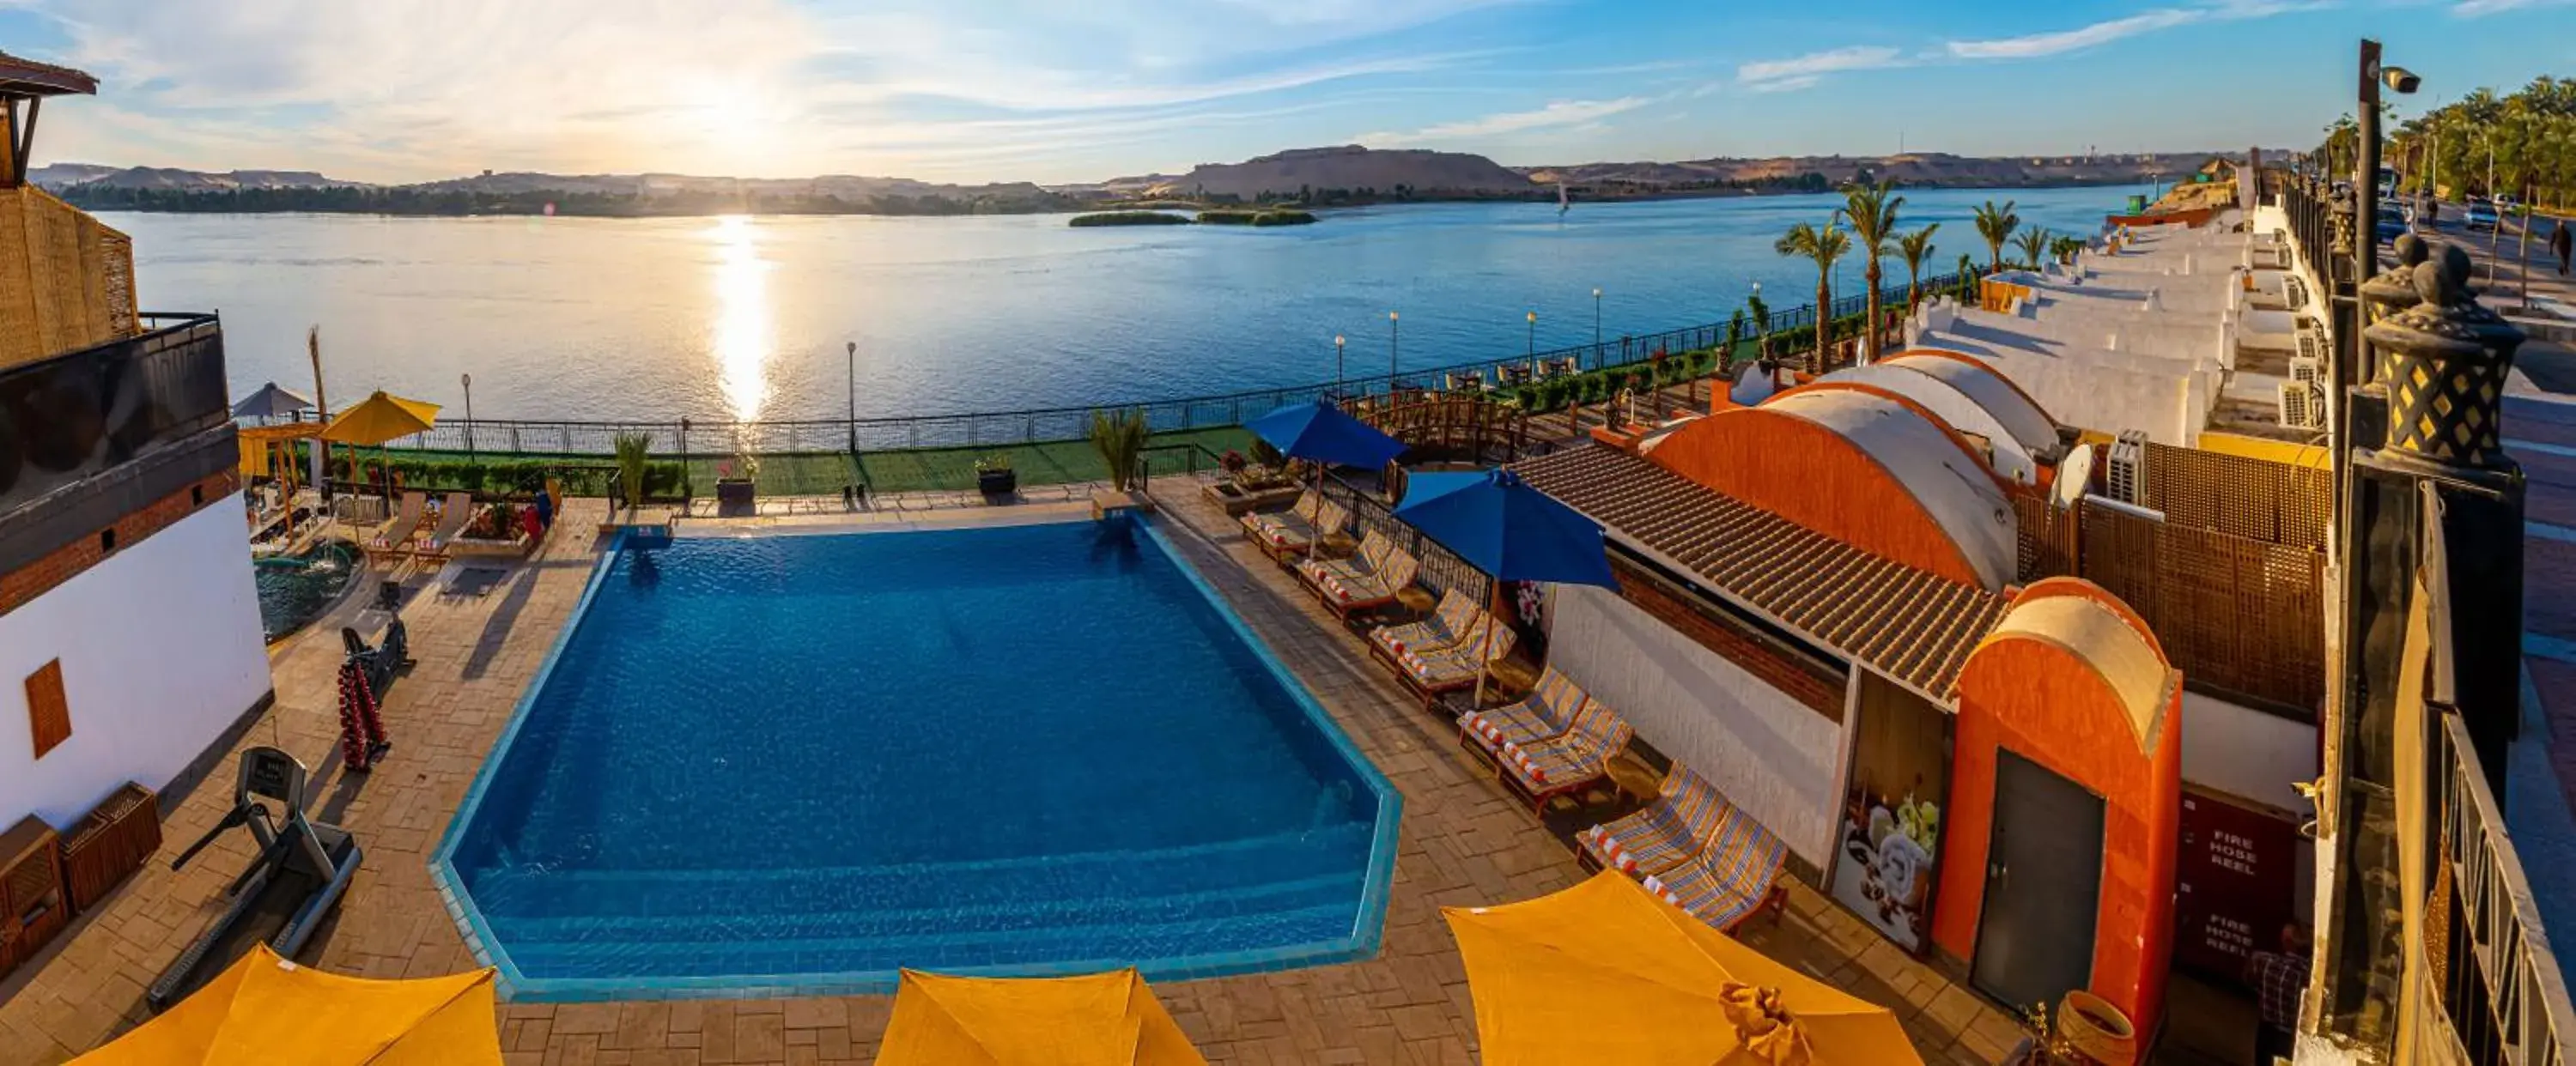 Swimming pool, Pool View in Sonesta Nouba Hotel Aswan